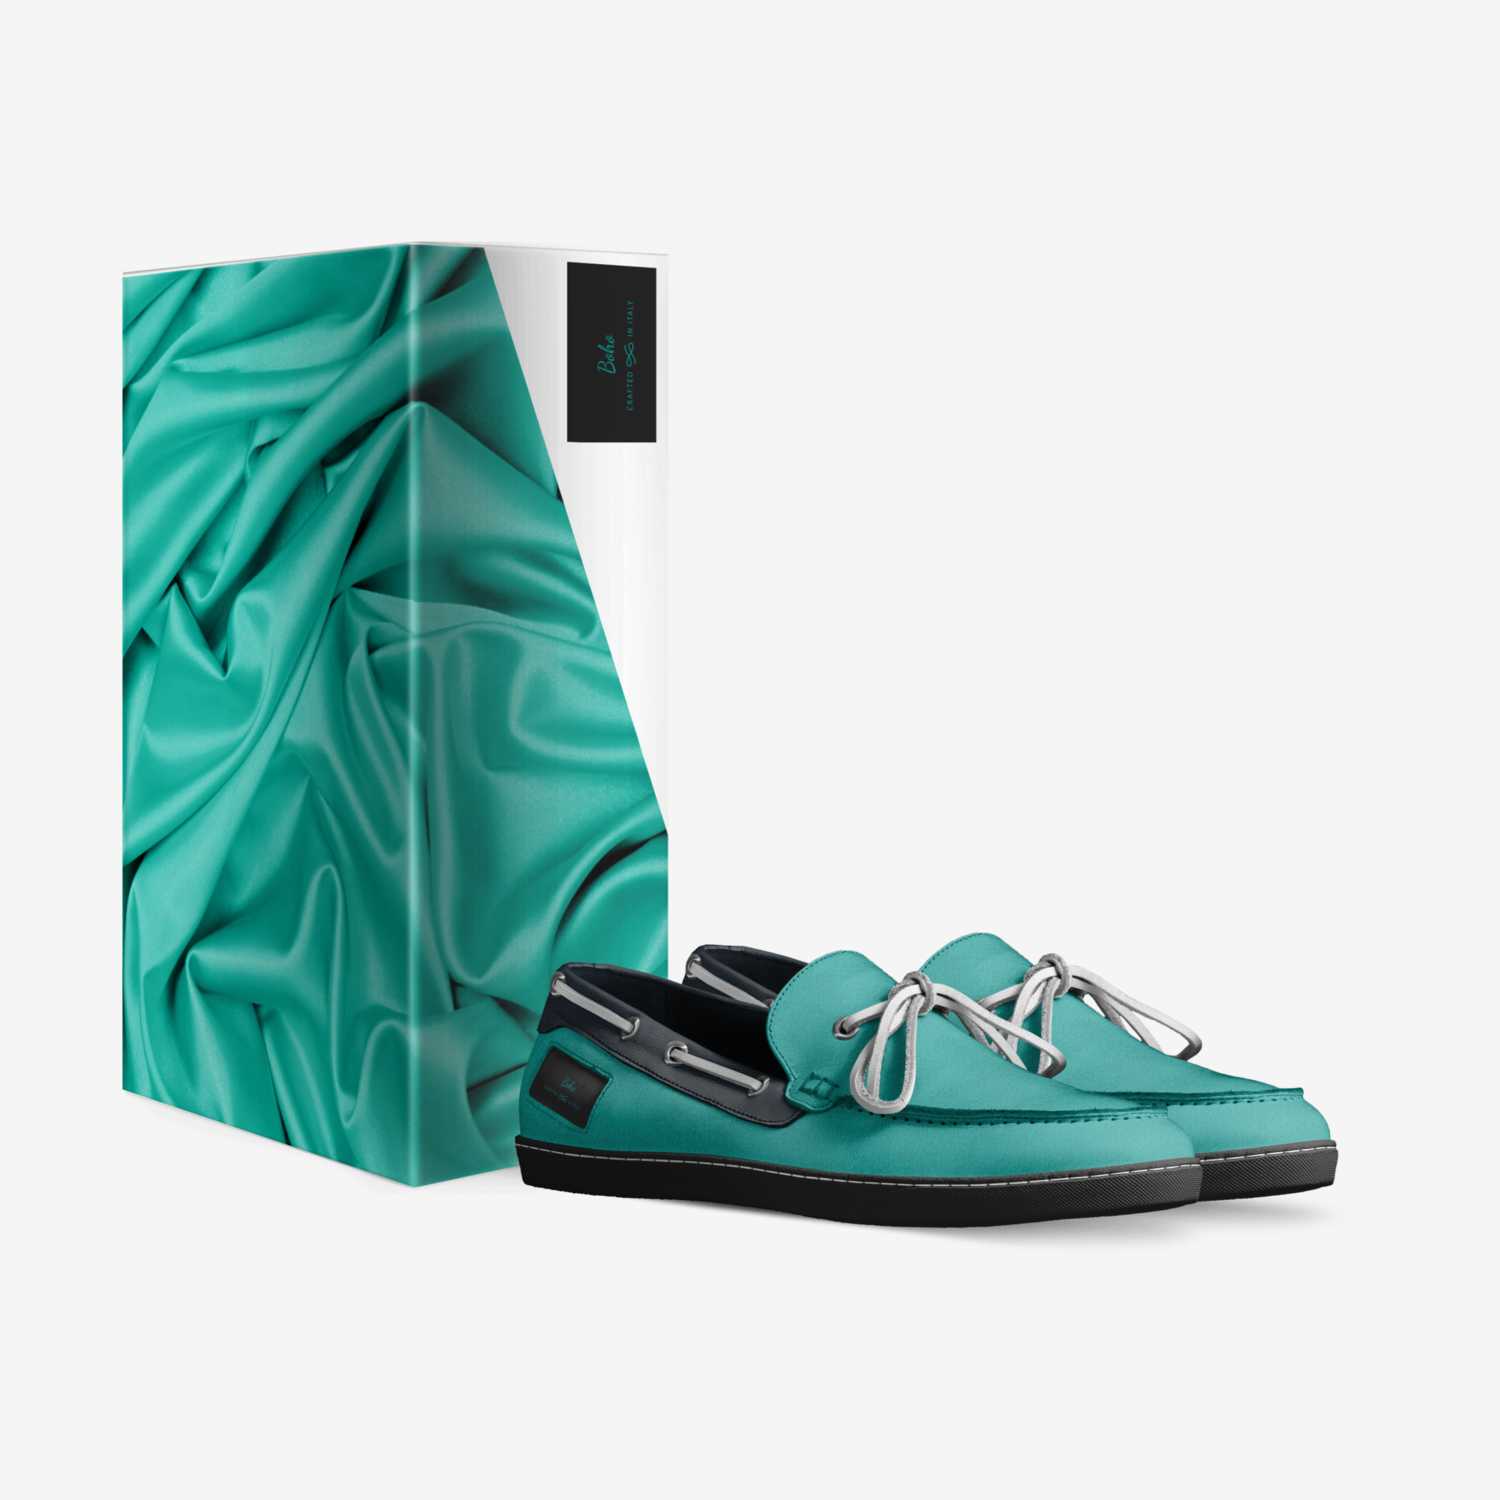 Boho custom made in Italy shoes by Gokeesha Draco | Box view